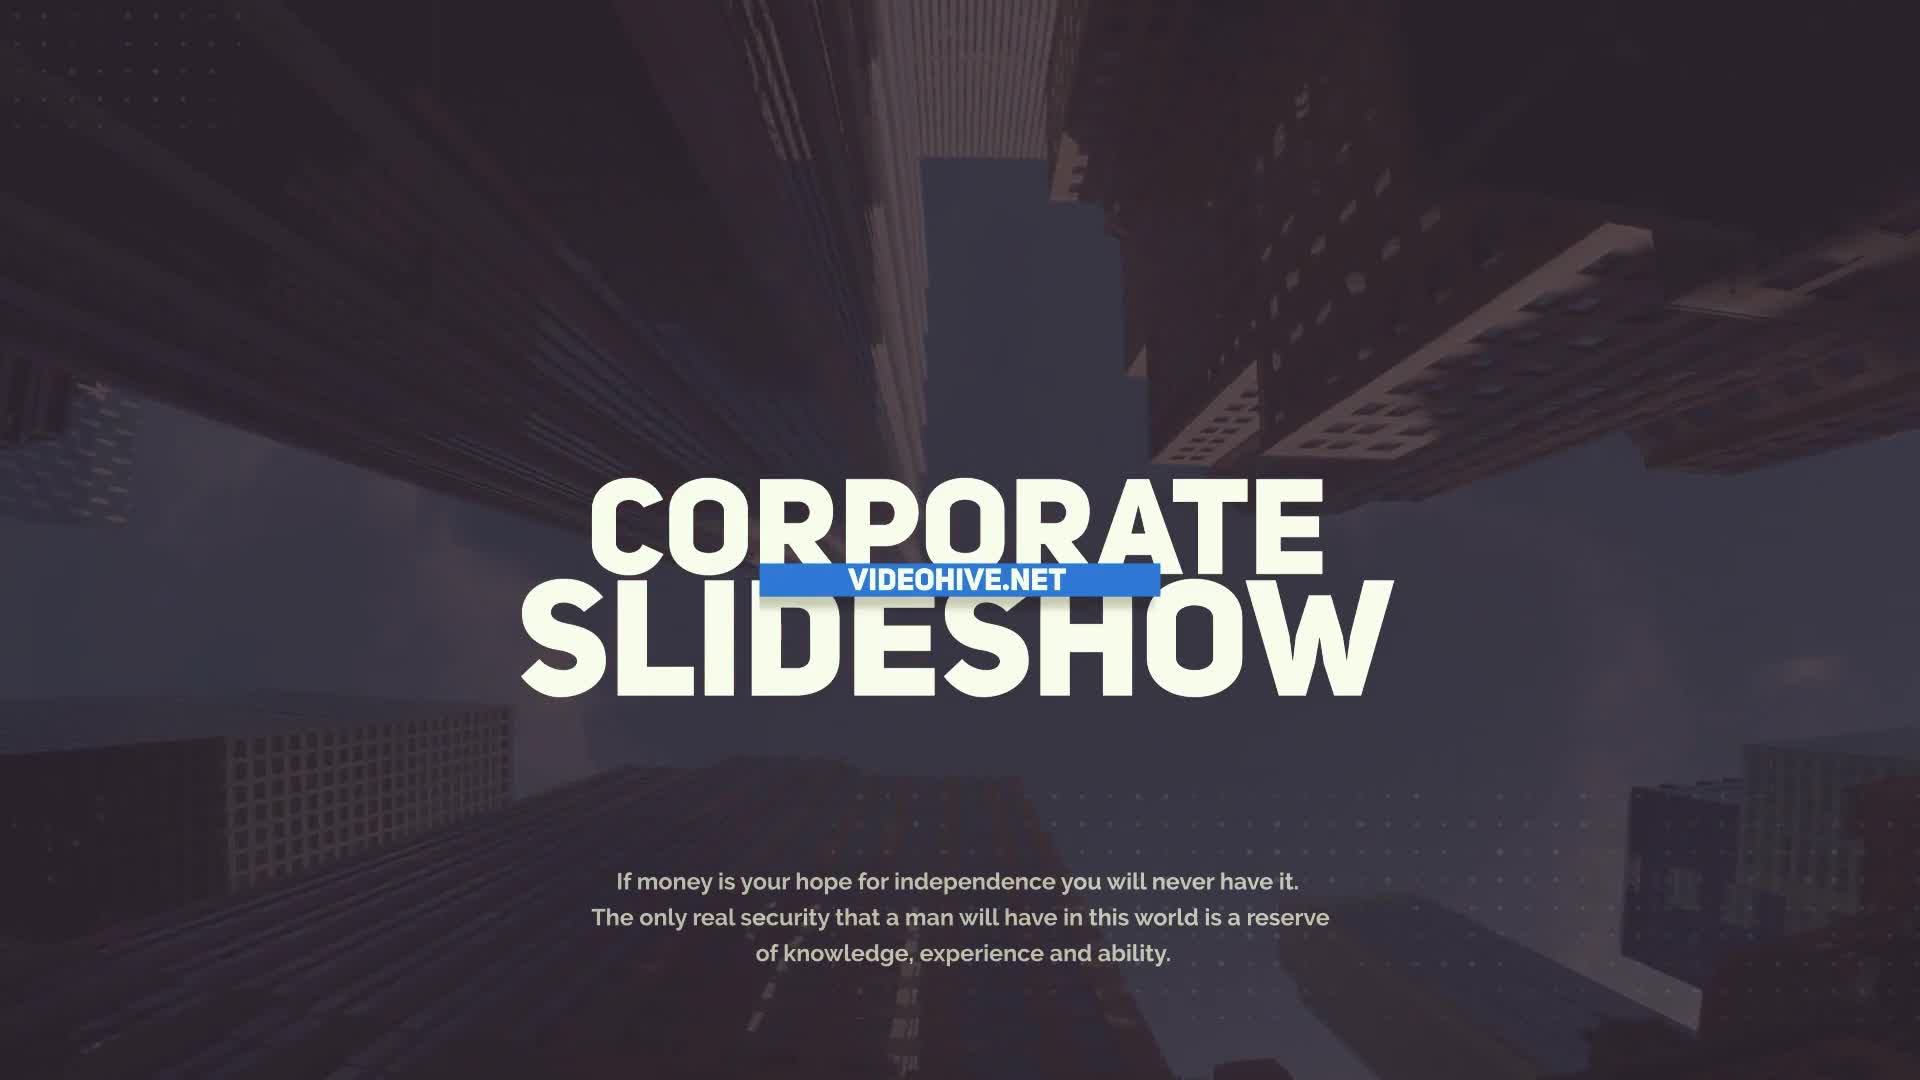 Corporate Slideshow Videohive 36709986 Premiere Pro Image 1